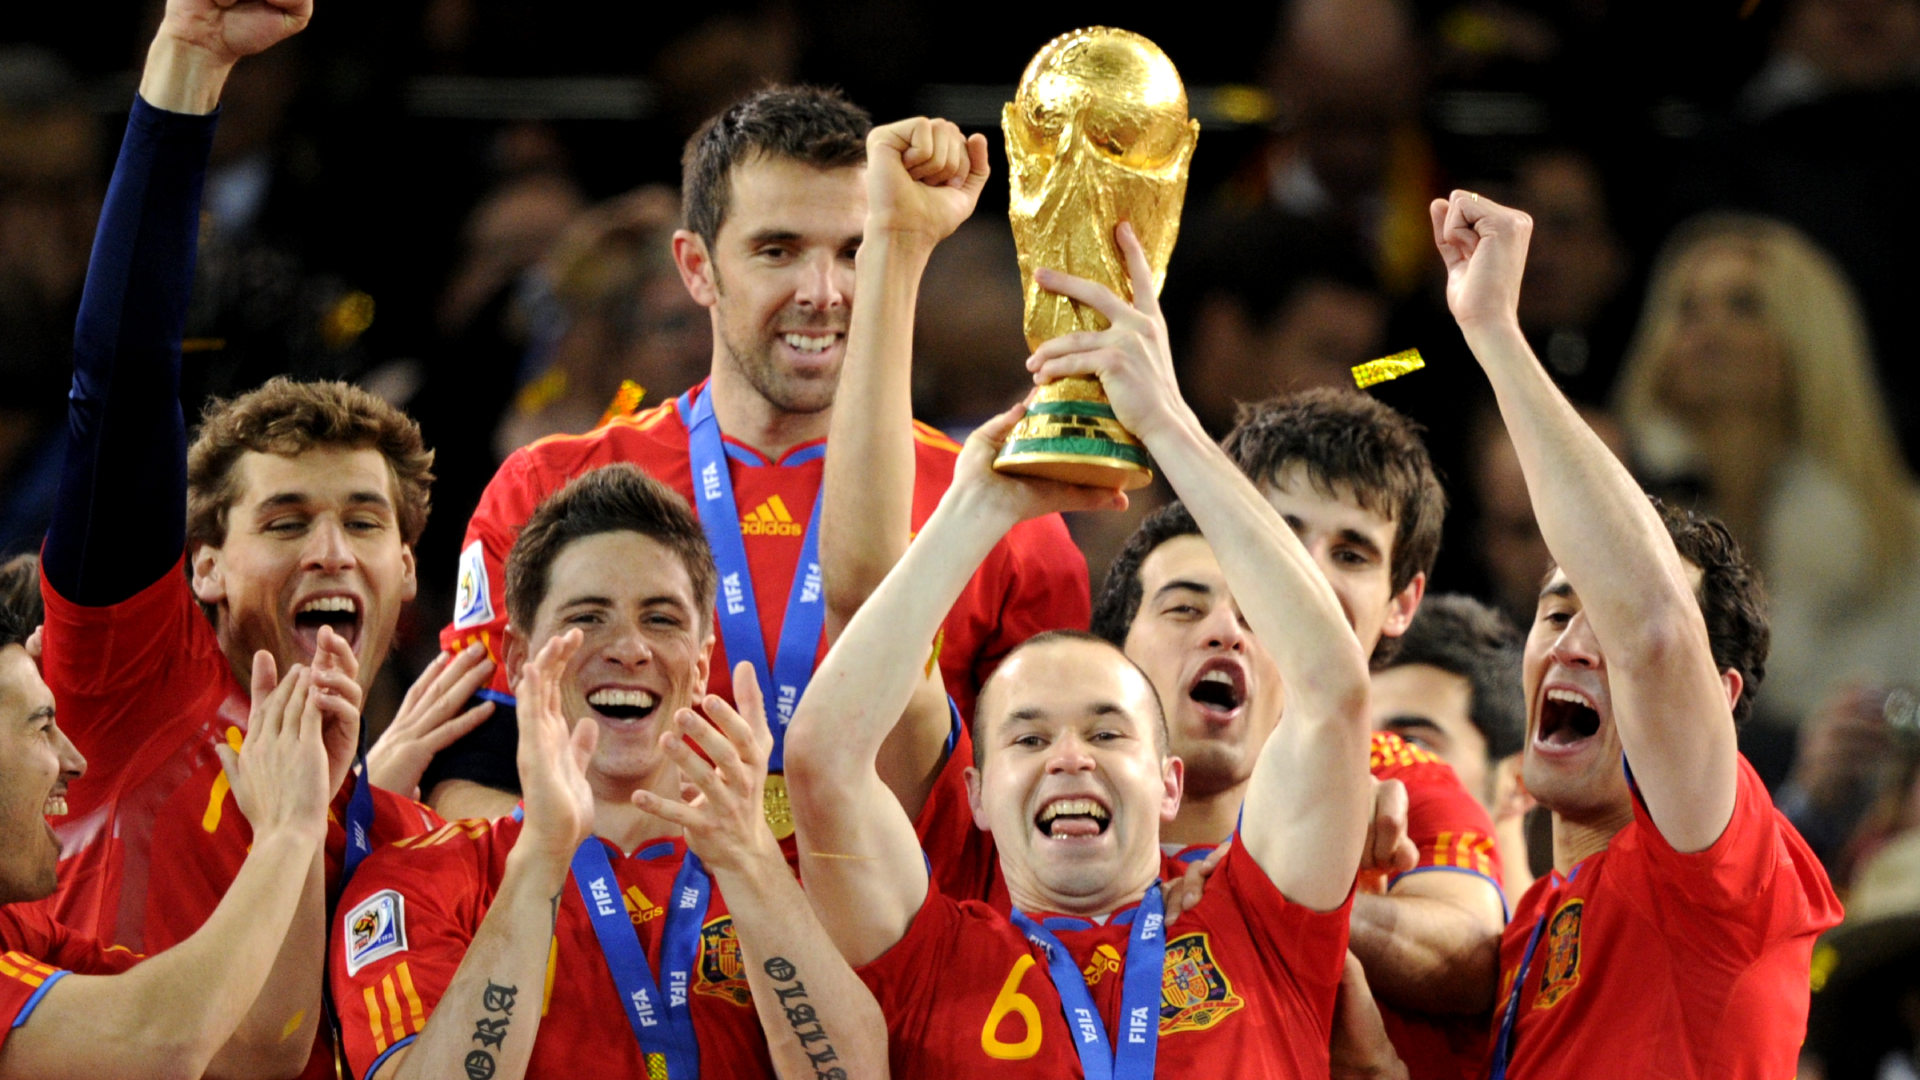 https://assets.goal.com/v3/assets/bltcc7a7ffd2fbf71f5/blt07ff73d3cbc2cadf/637b683c784b5c4e43f83102/Coupe_du_monde_2010_Espagne_Victoire.png